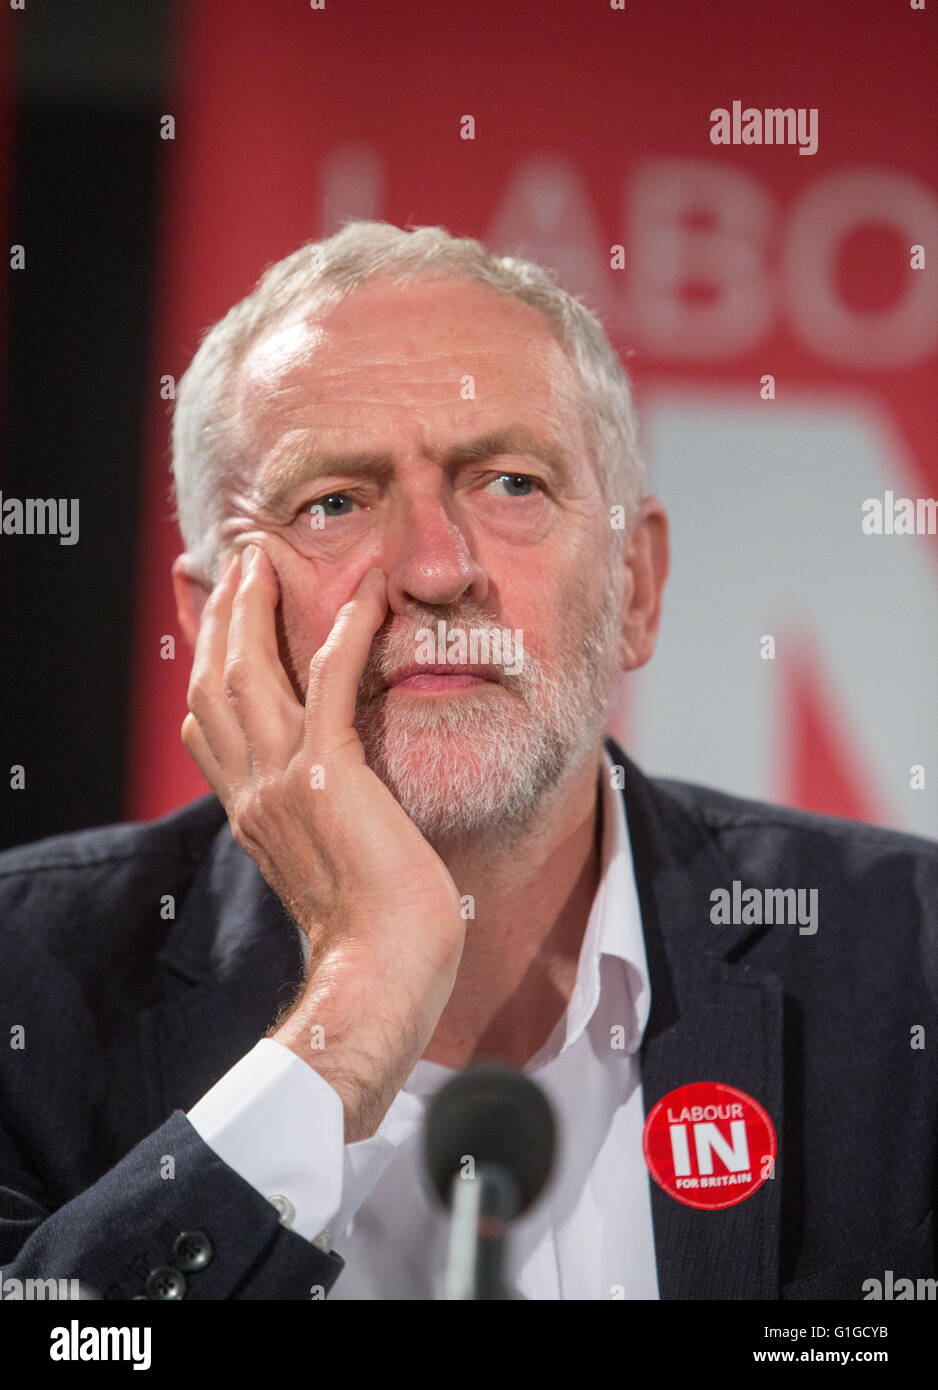 Líder laborista Jeremy Corbyn habla a un "voto de permanecer Junio 23rd' rally en Westminster, Londres.él es apoyar el "voto" Foto de stock